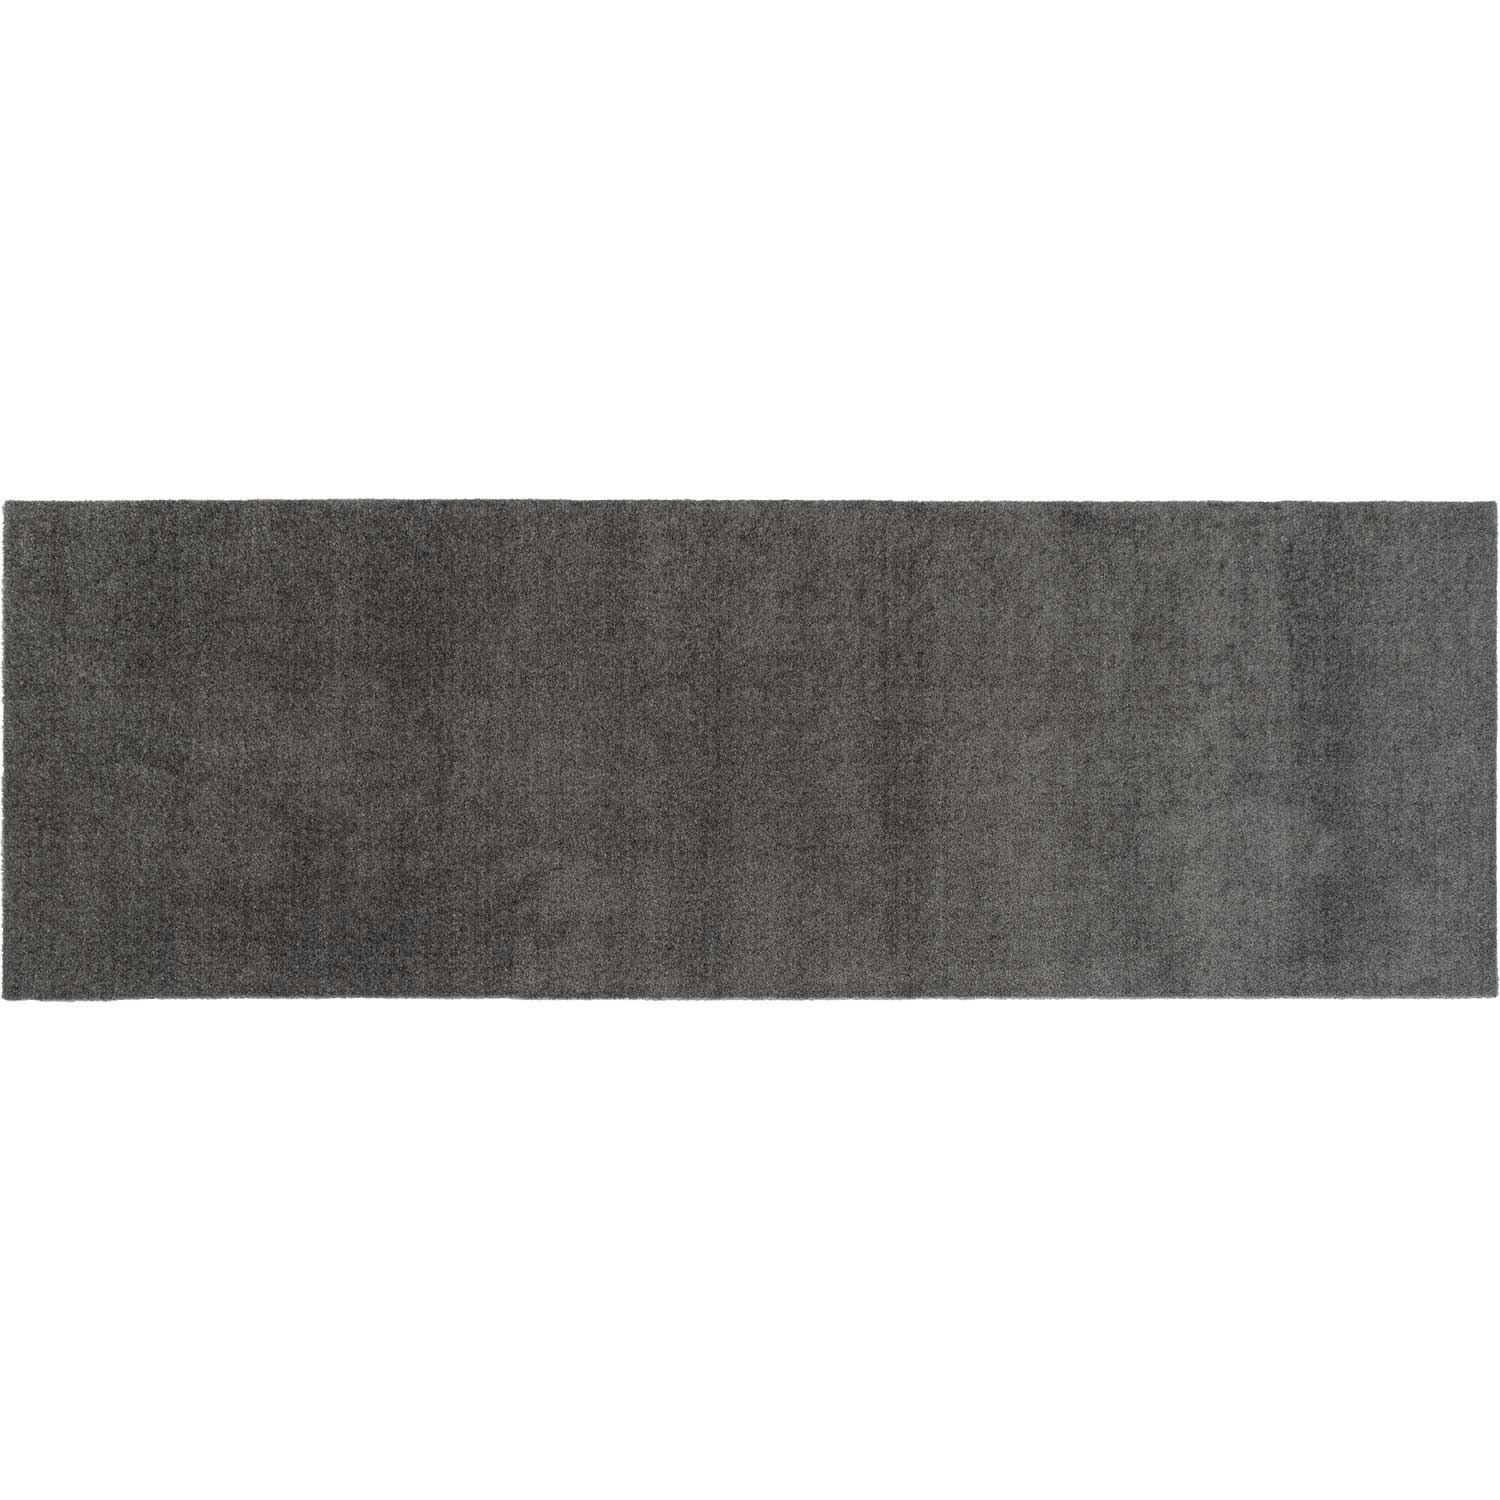 Unicolor Door Mat Steel Grey, 40x60 cm - Tica Copenhagen @ RoyalDesign